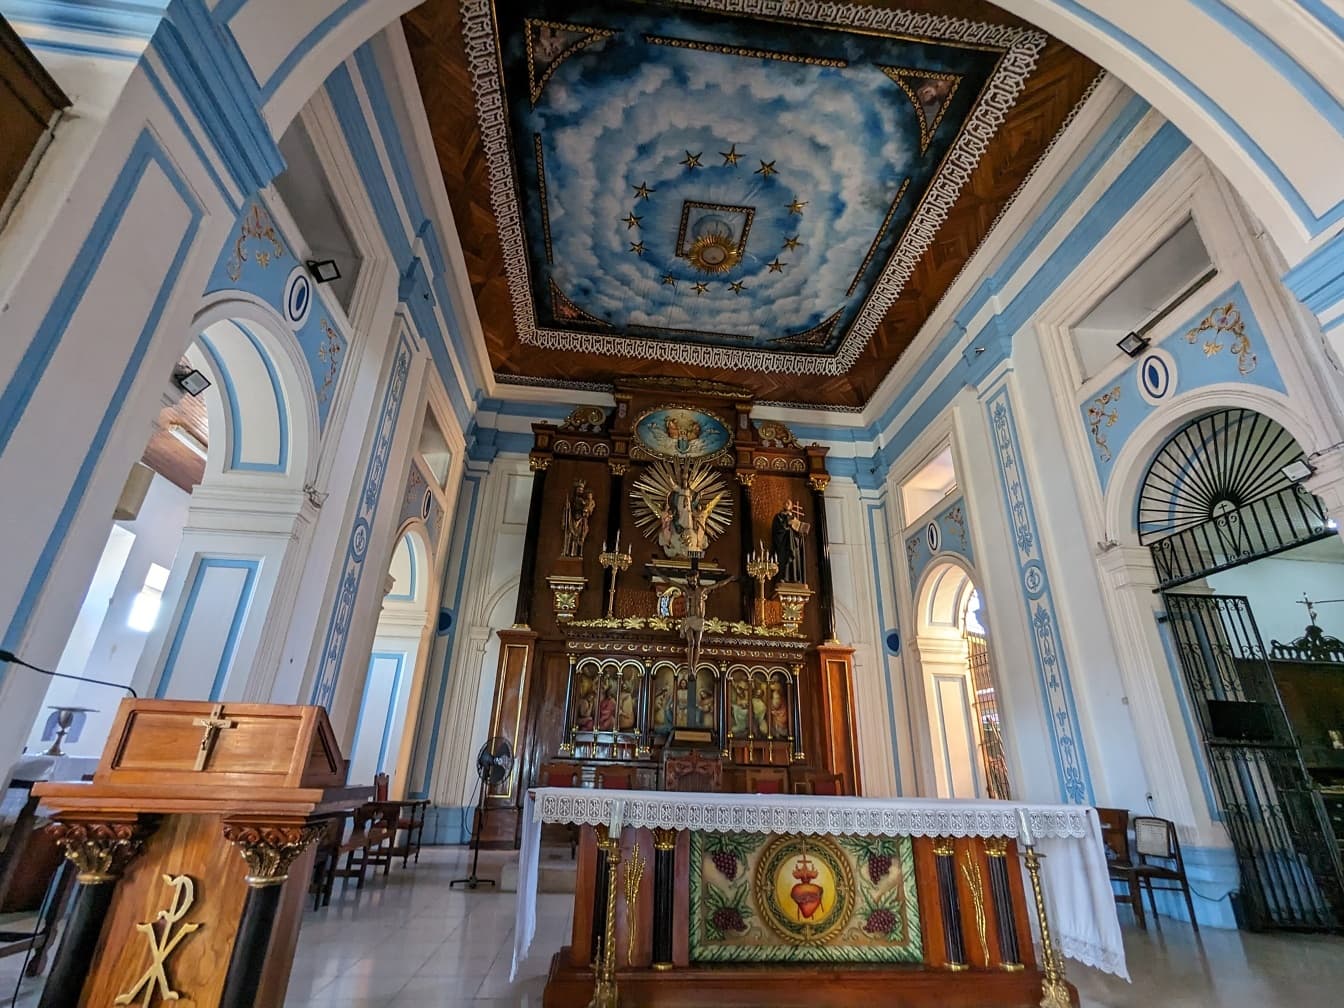 Interiér kostela Xalteva v Granadě v Nikaragui s nástěnnou malbou na stropě